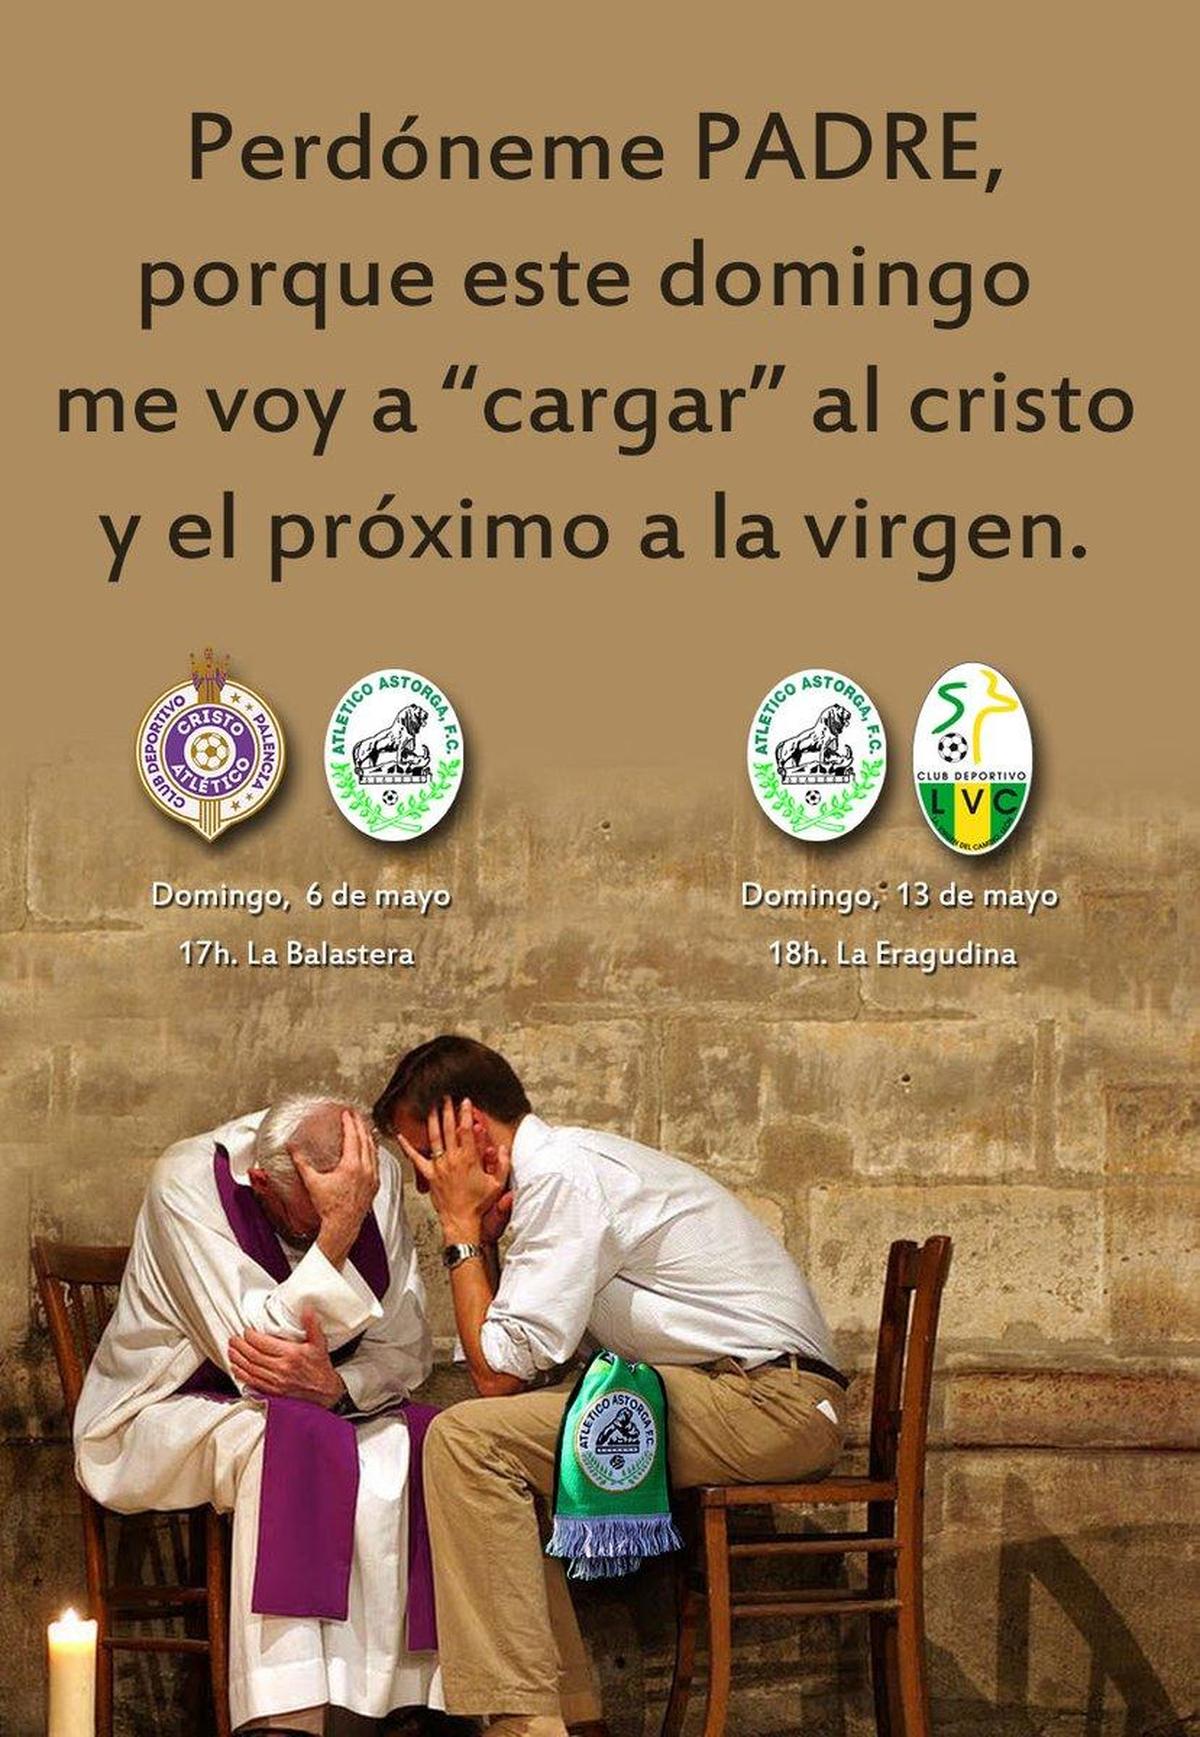 El Astorga dice que se va 'cargar' al Cristo y a la virgen